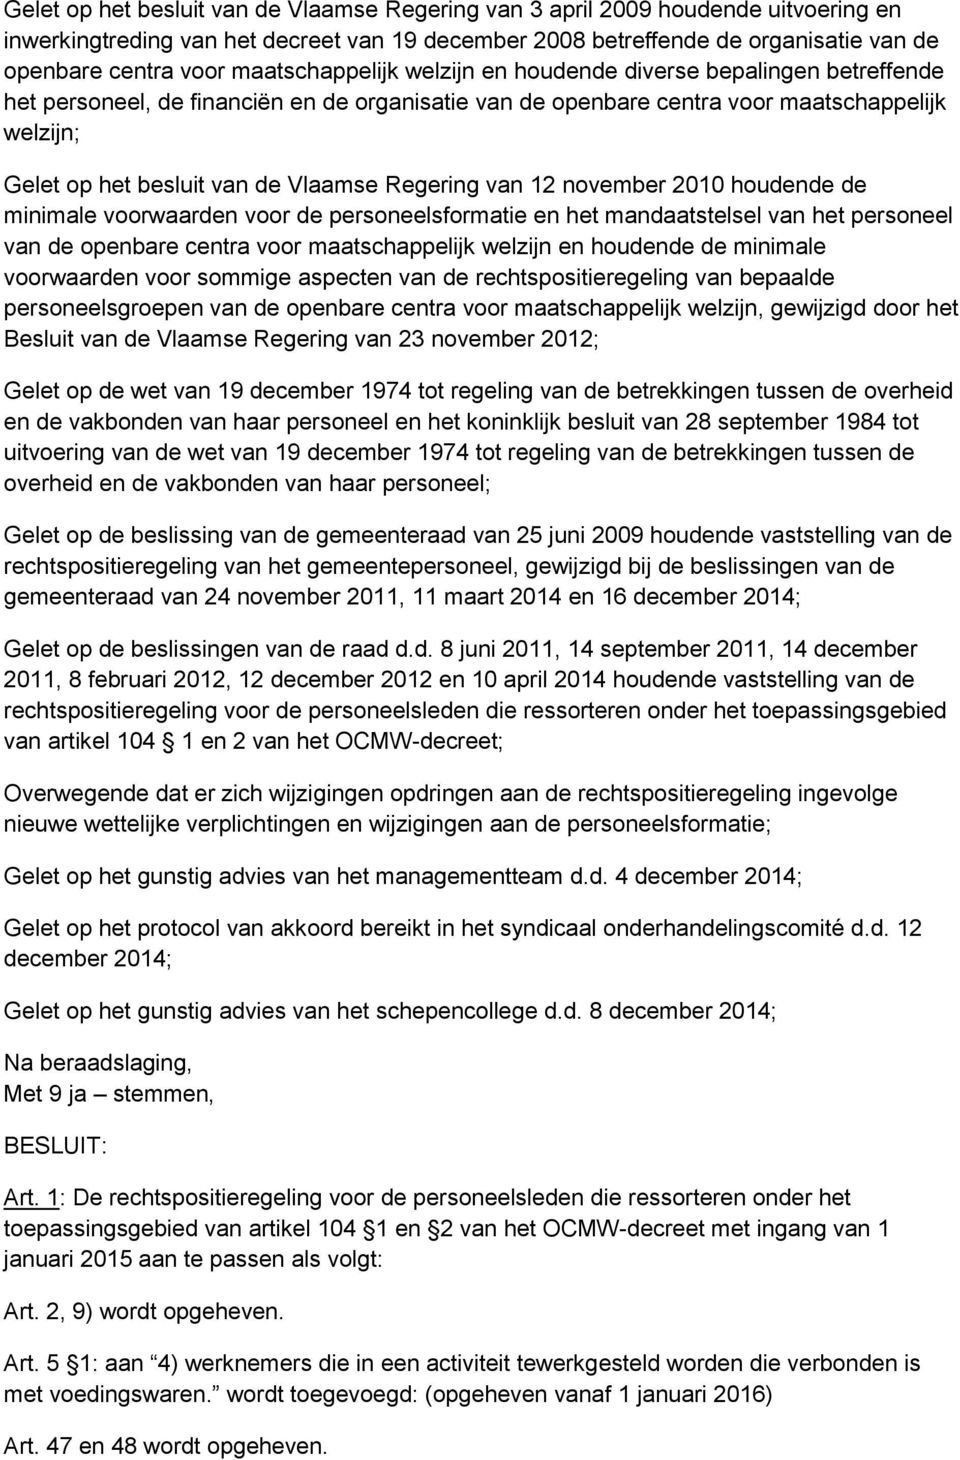 Vlaamse Regering van 12 november 2010 houdende de minimale voorwaarden voor de personeelsformatie en het mandaatstelsel van het personeel van de openbare centra voor maatschappelijk welzijn en